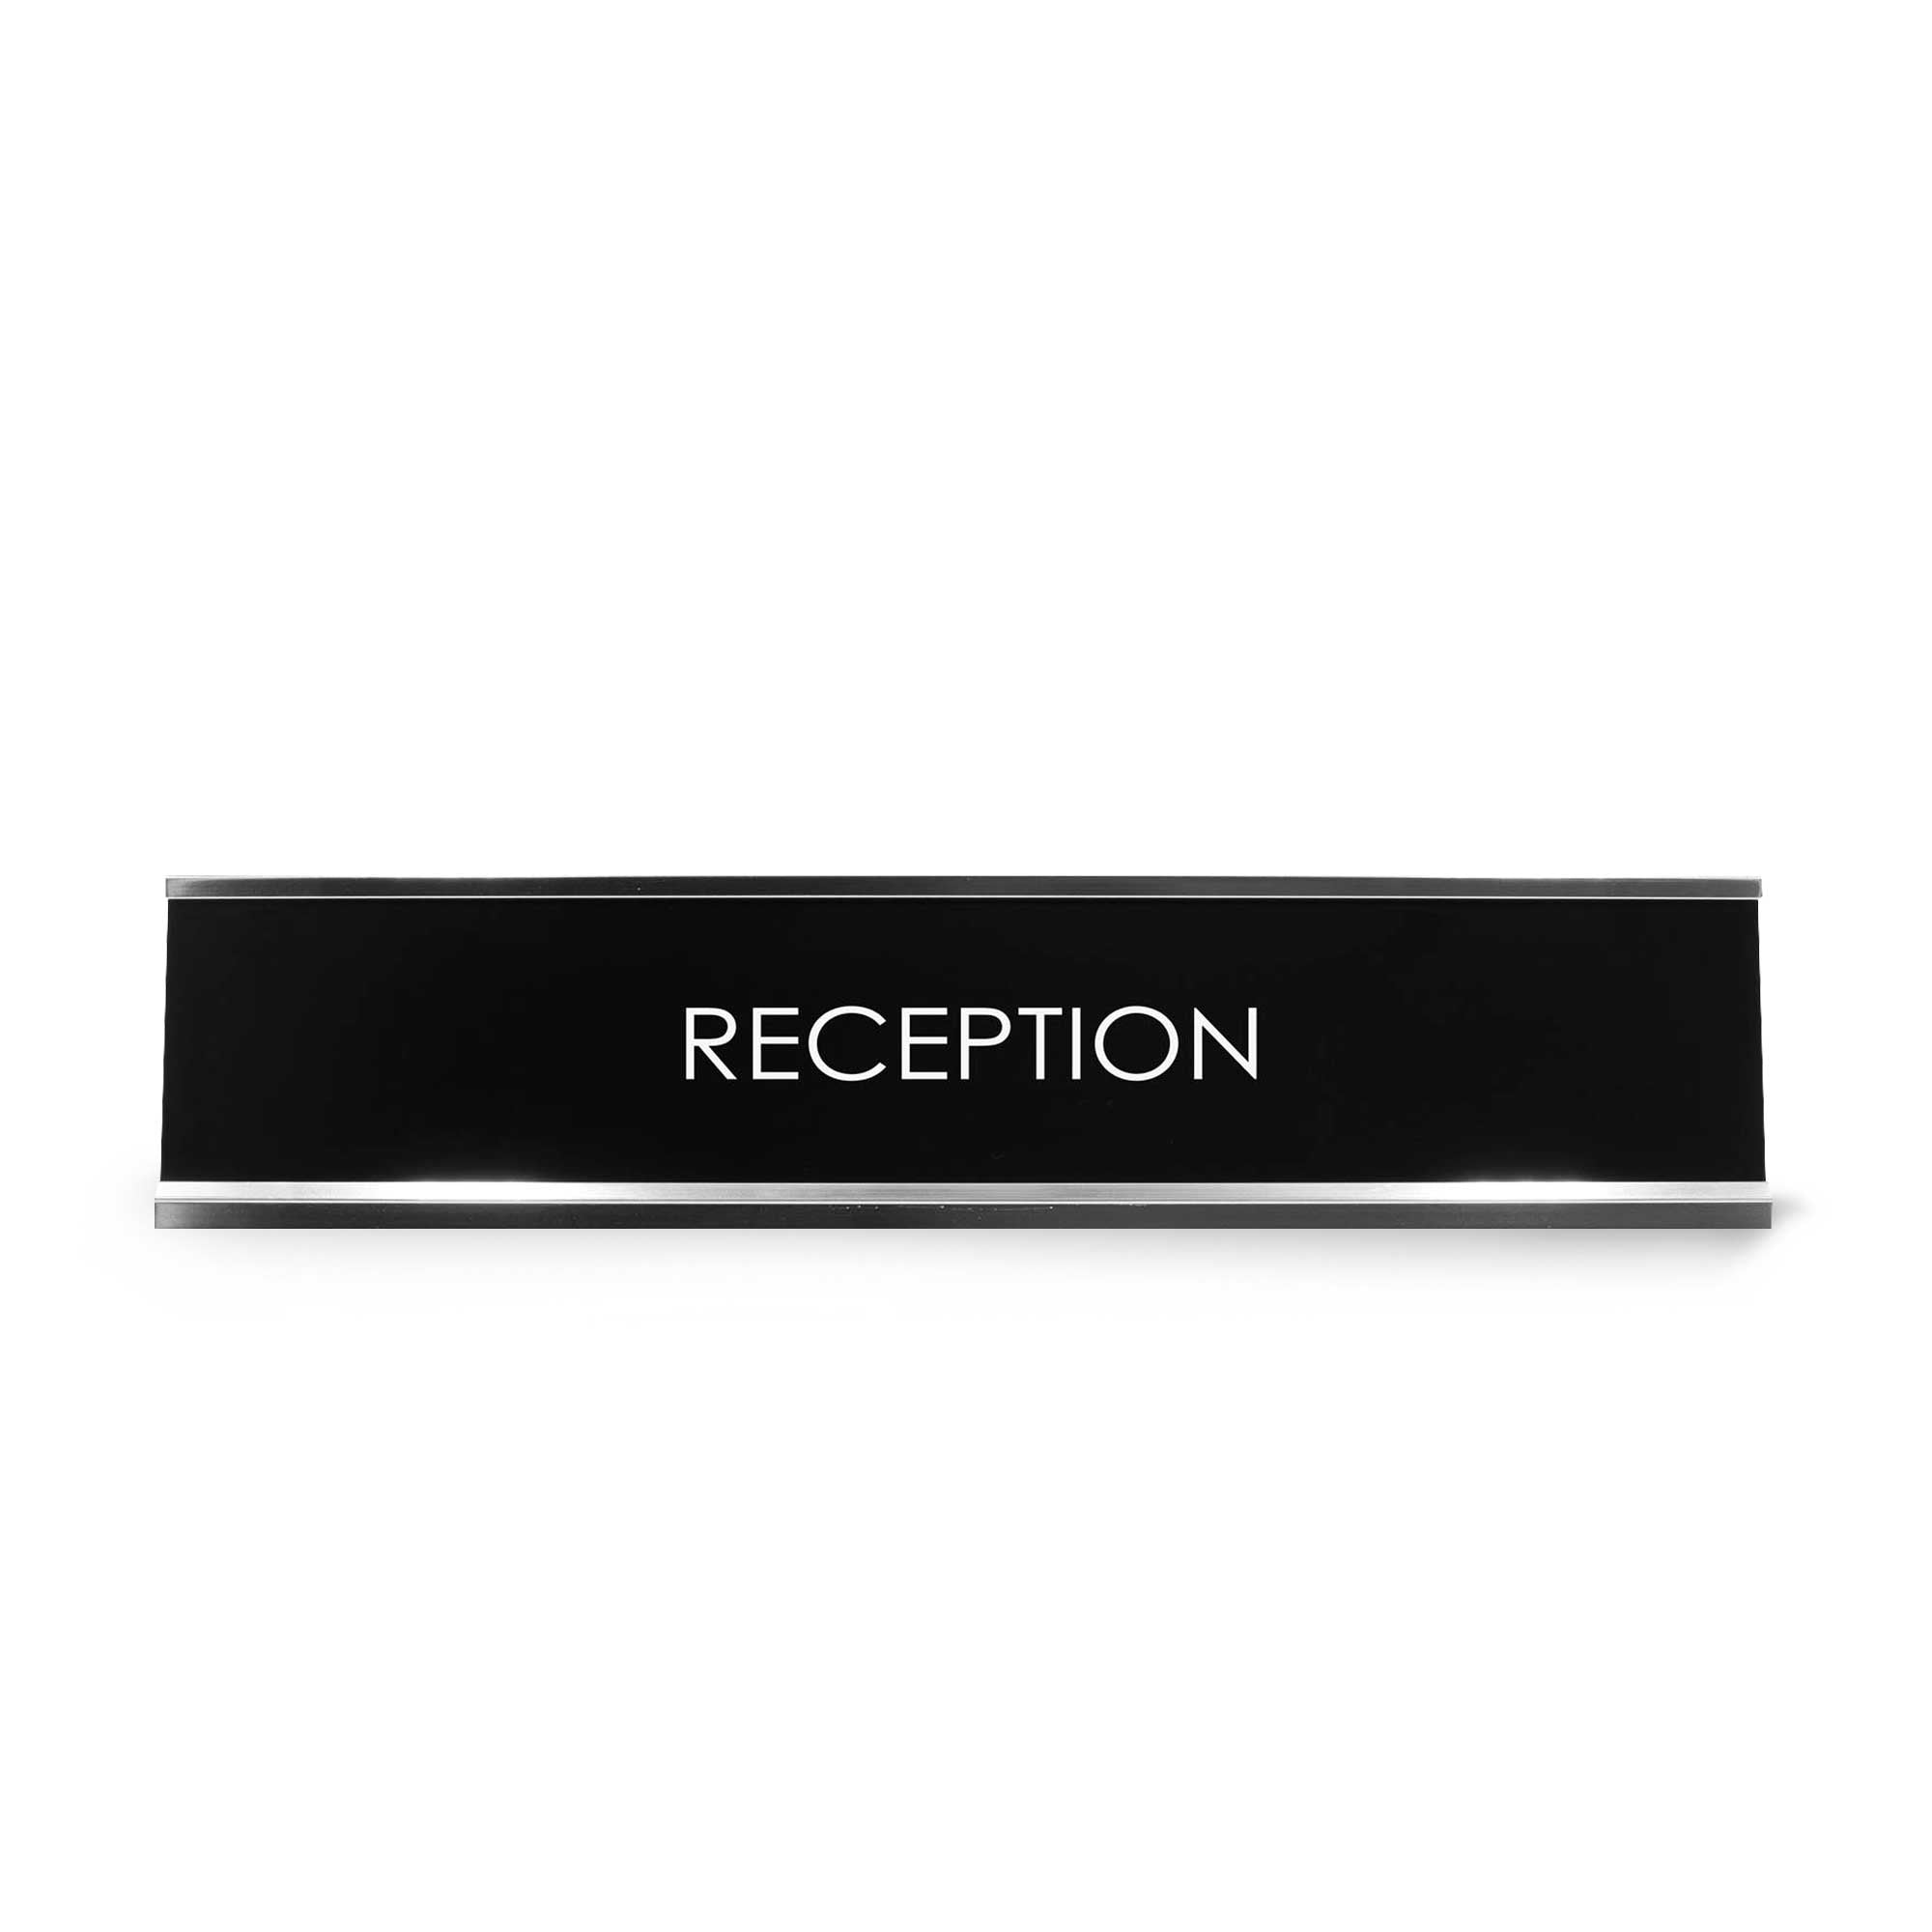 Reception Novelty Desk Sign